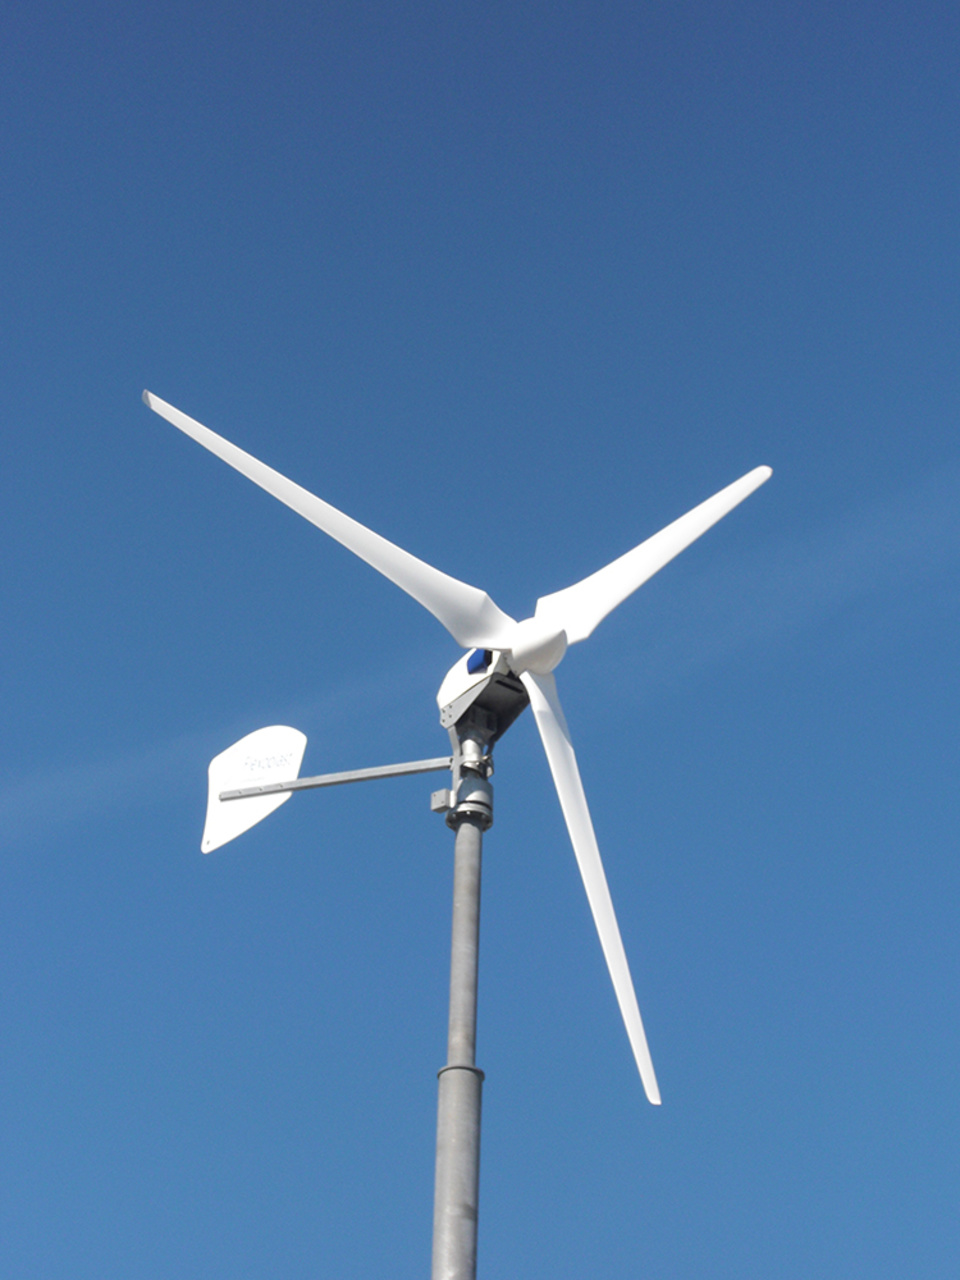 Windkraft2 bei manes die electro gmbh in Erfurt